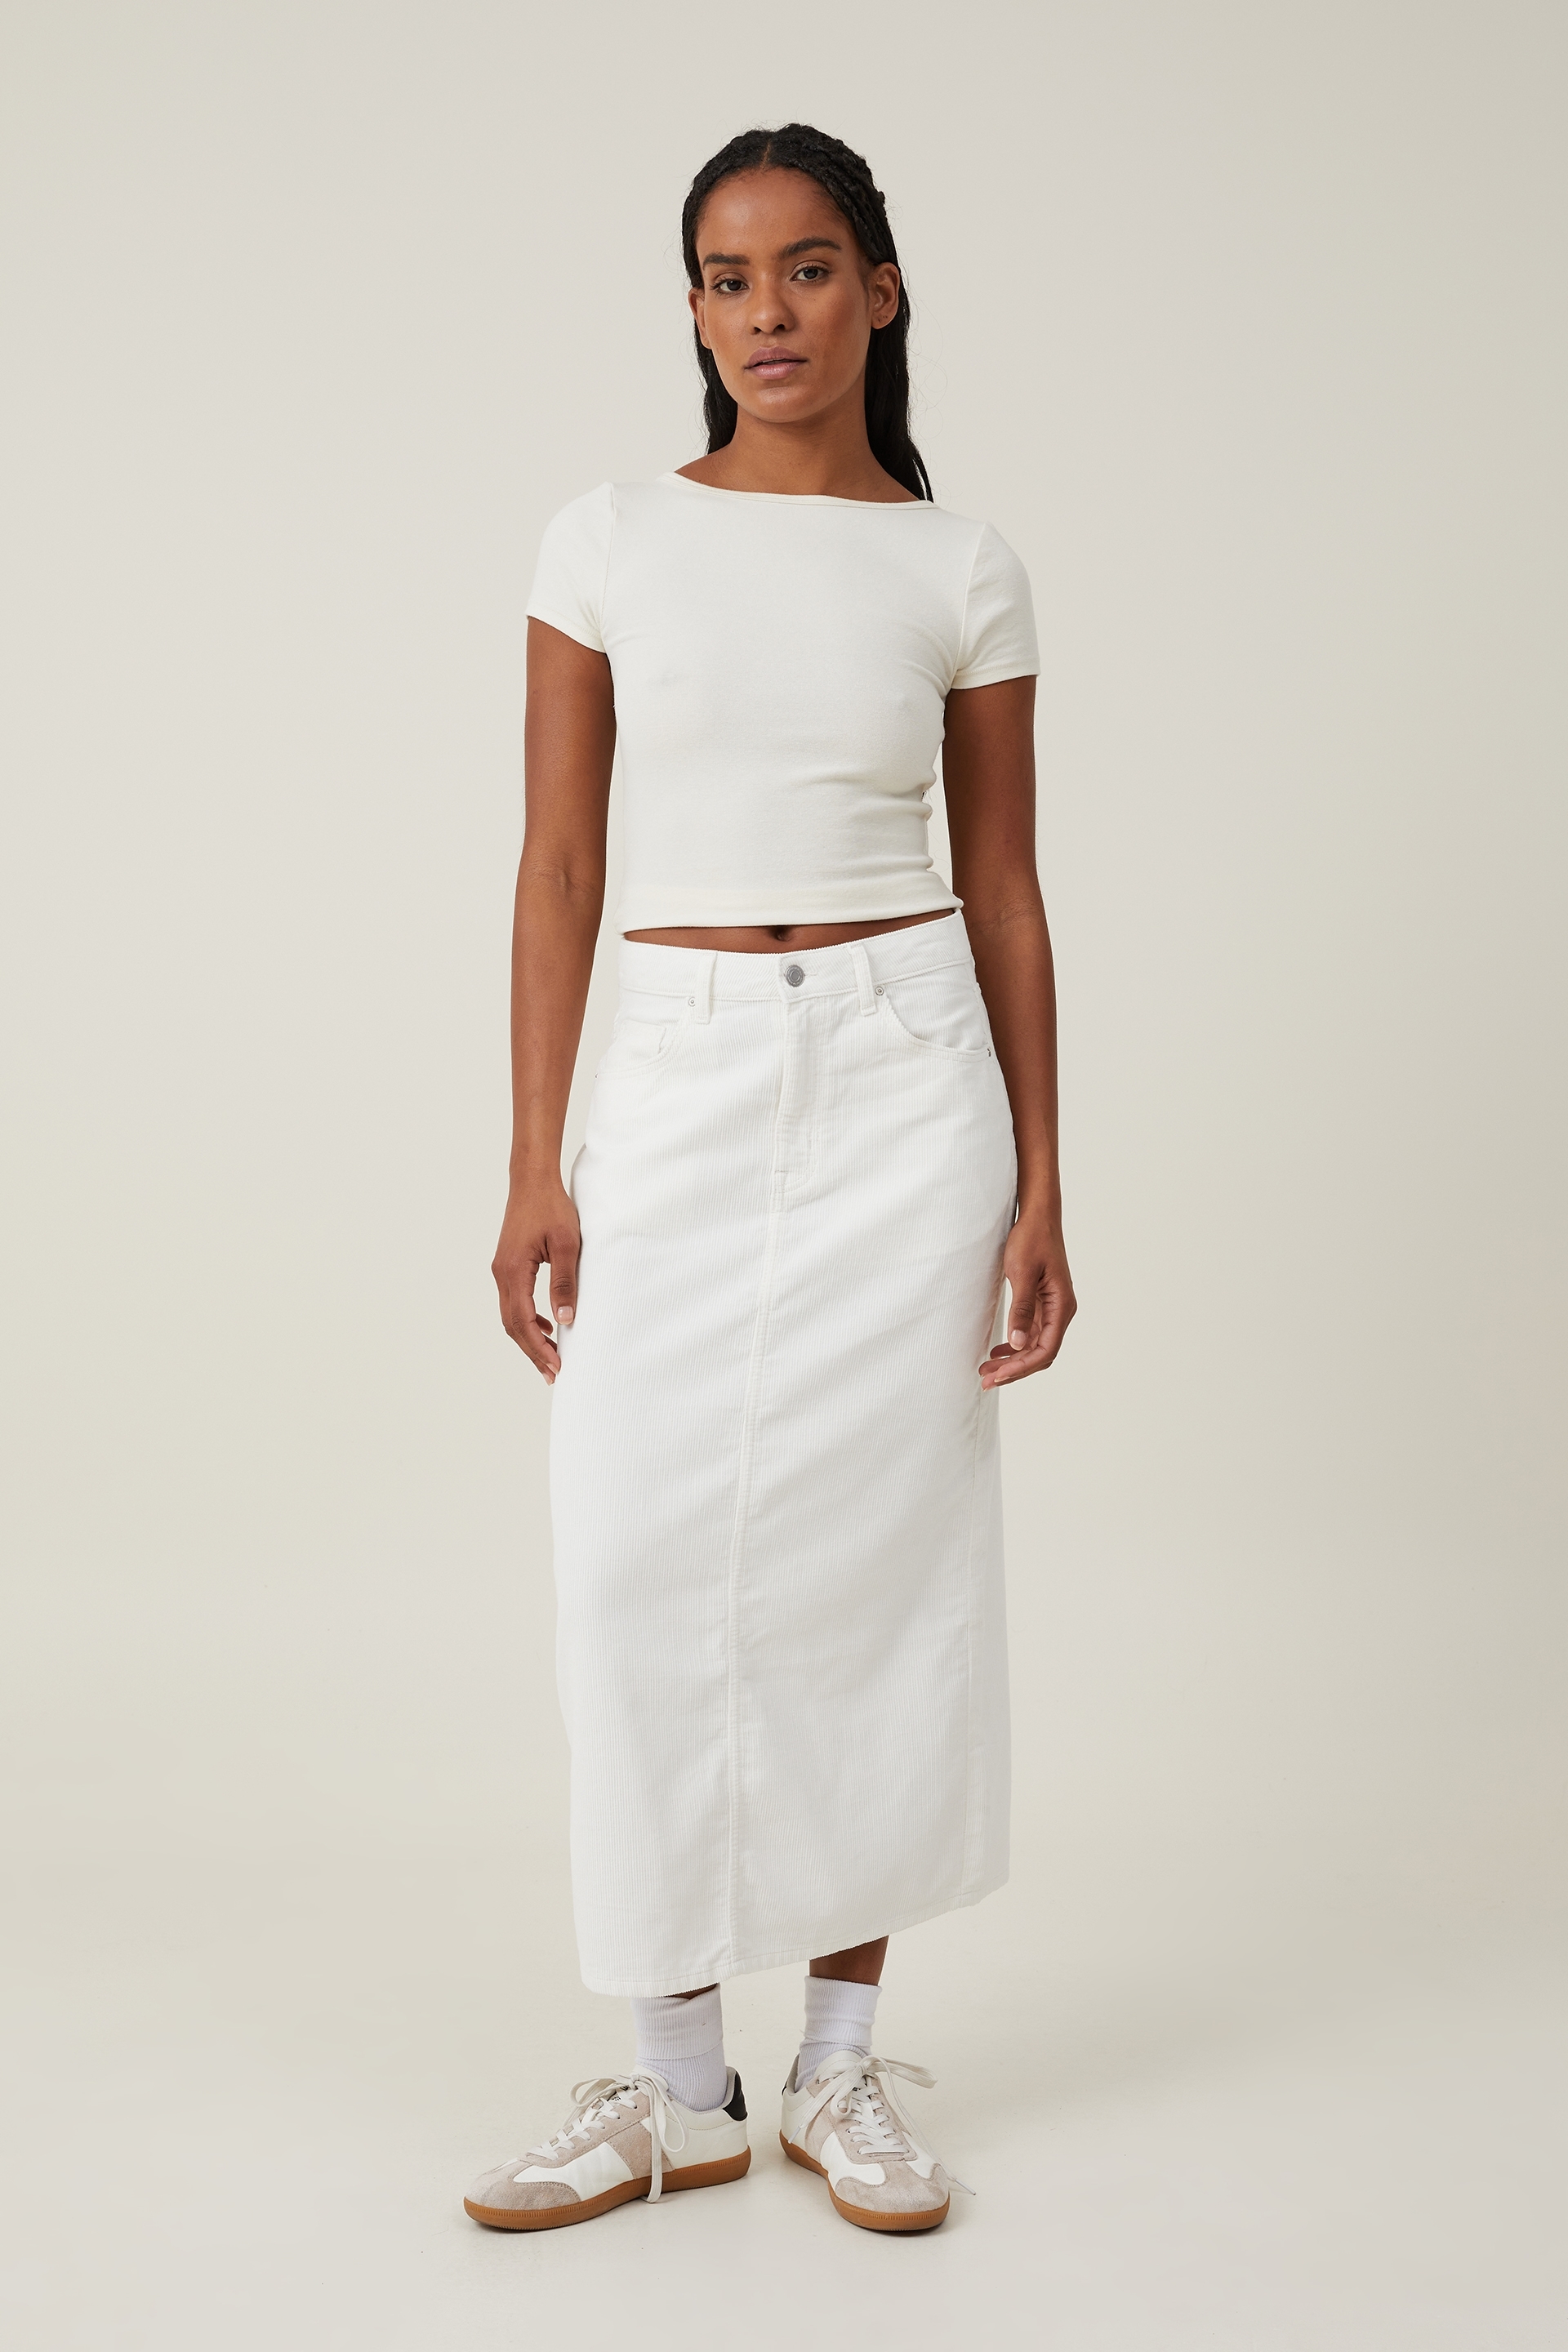 Cotton On Women - Cord Maxi Skirt - White